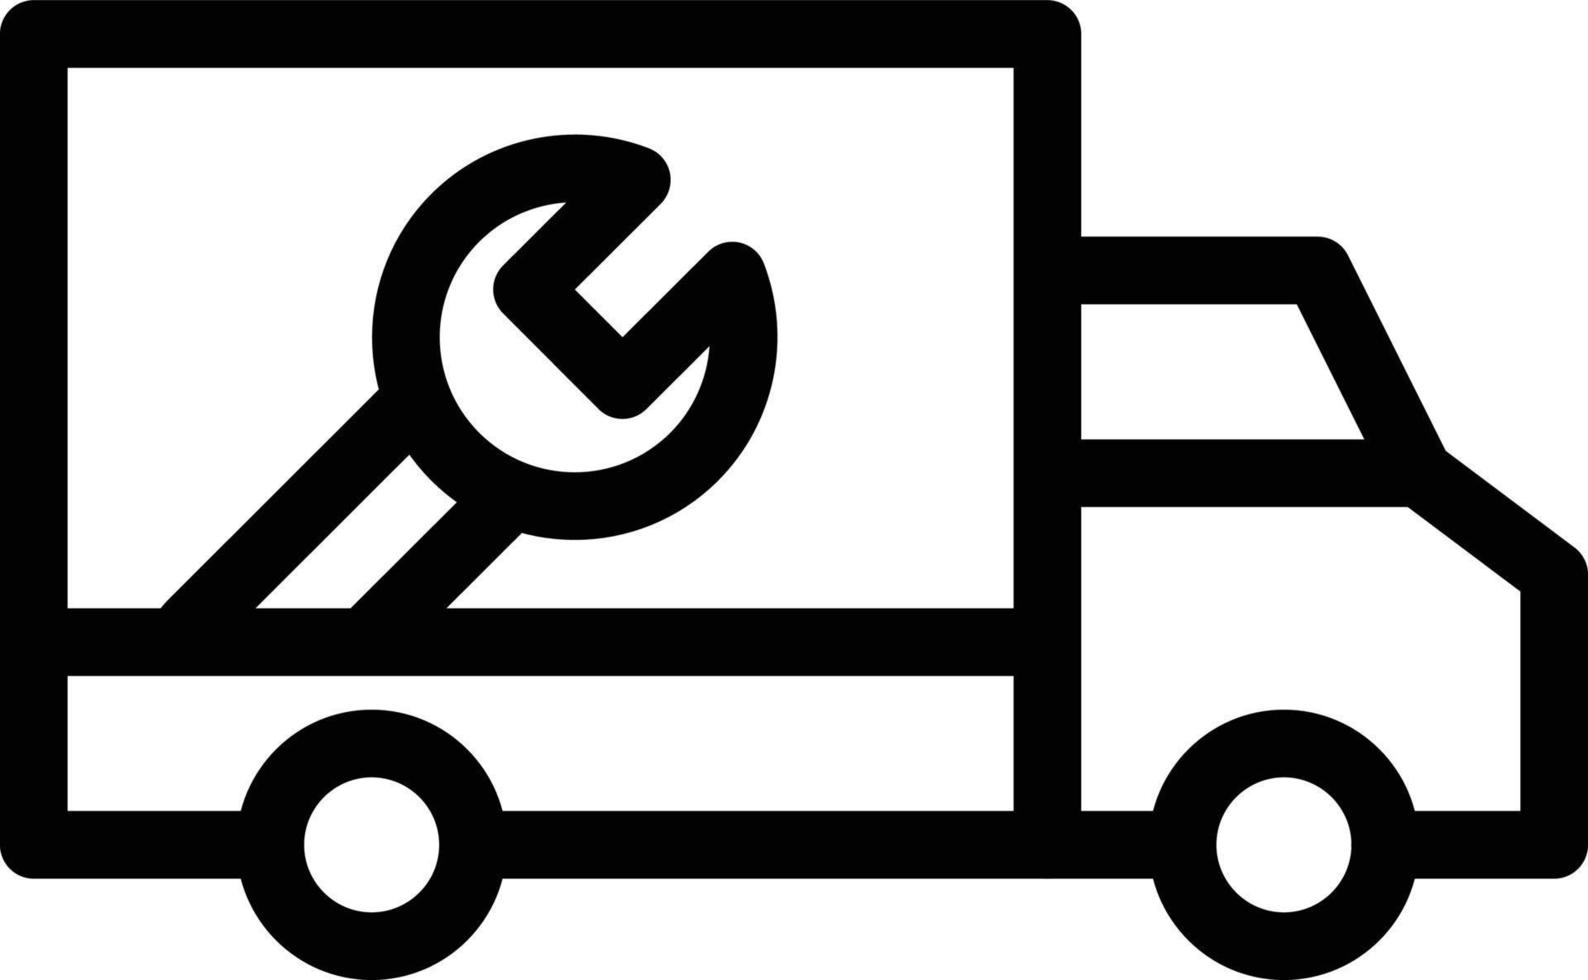 onderhoud vrachtwagen vectorillustratie op een background.premium kwaliteit symbolen.vector pictogrammen voor concept en grafisch ontwerp. vector